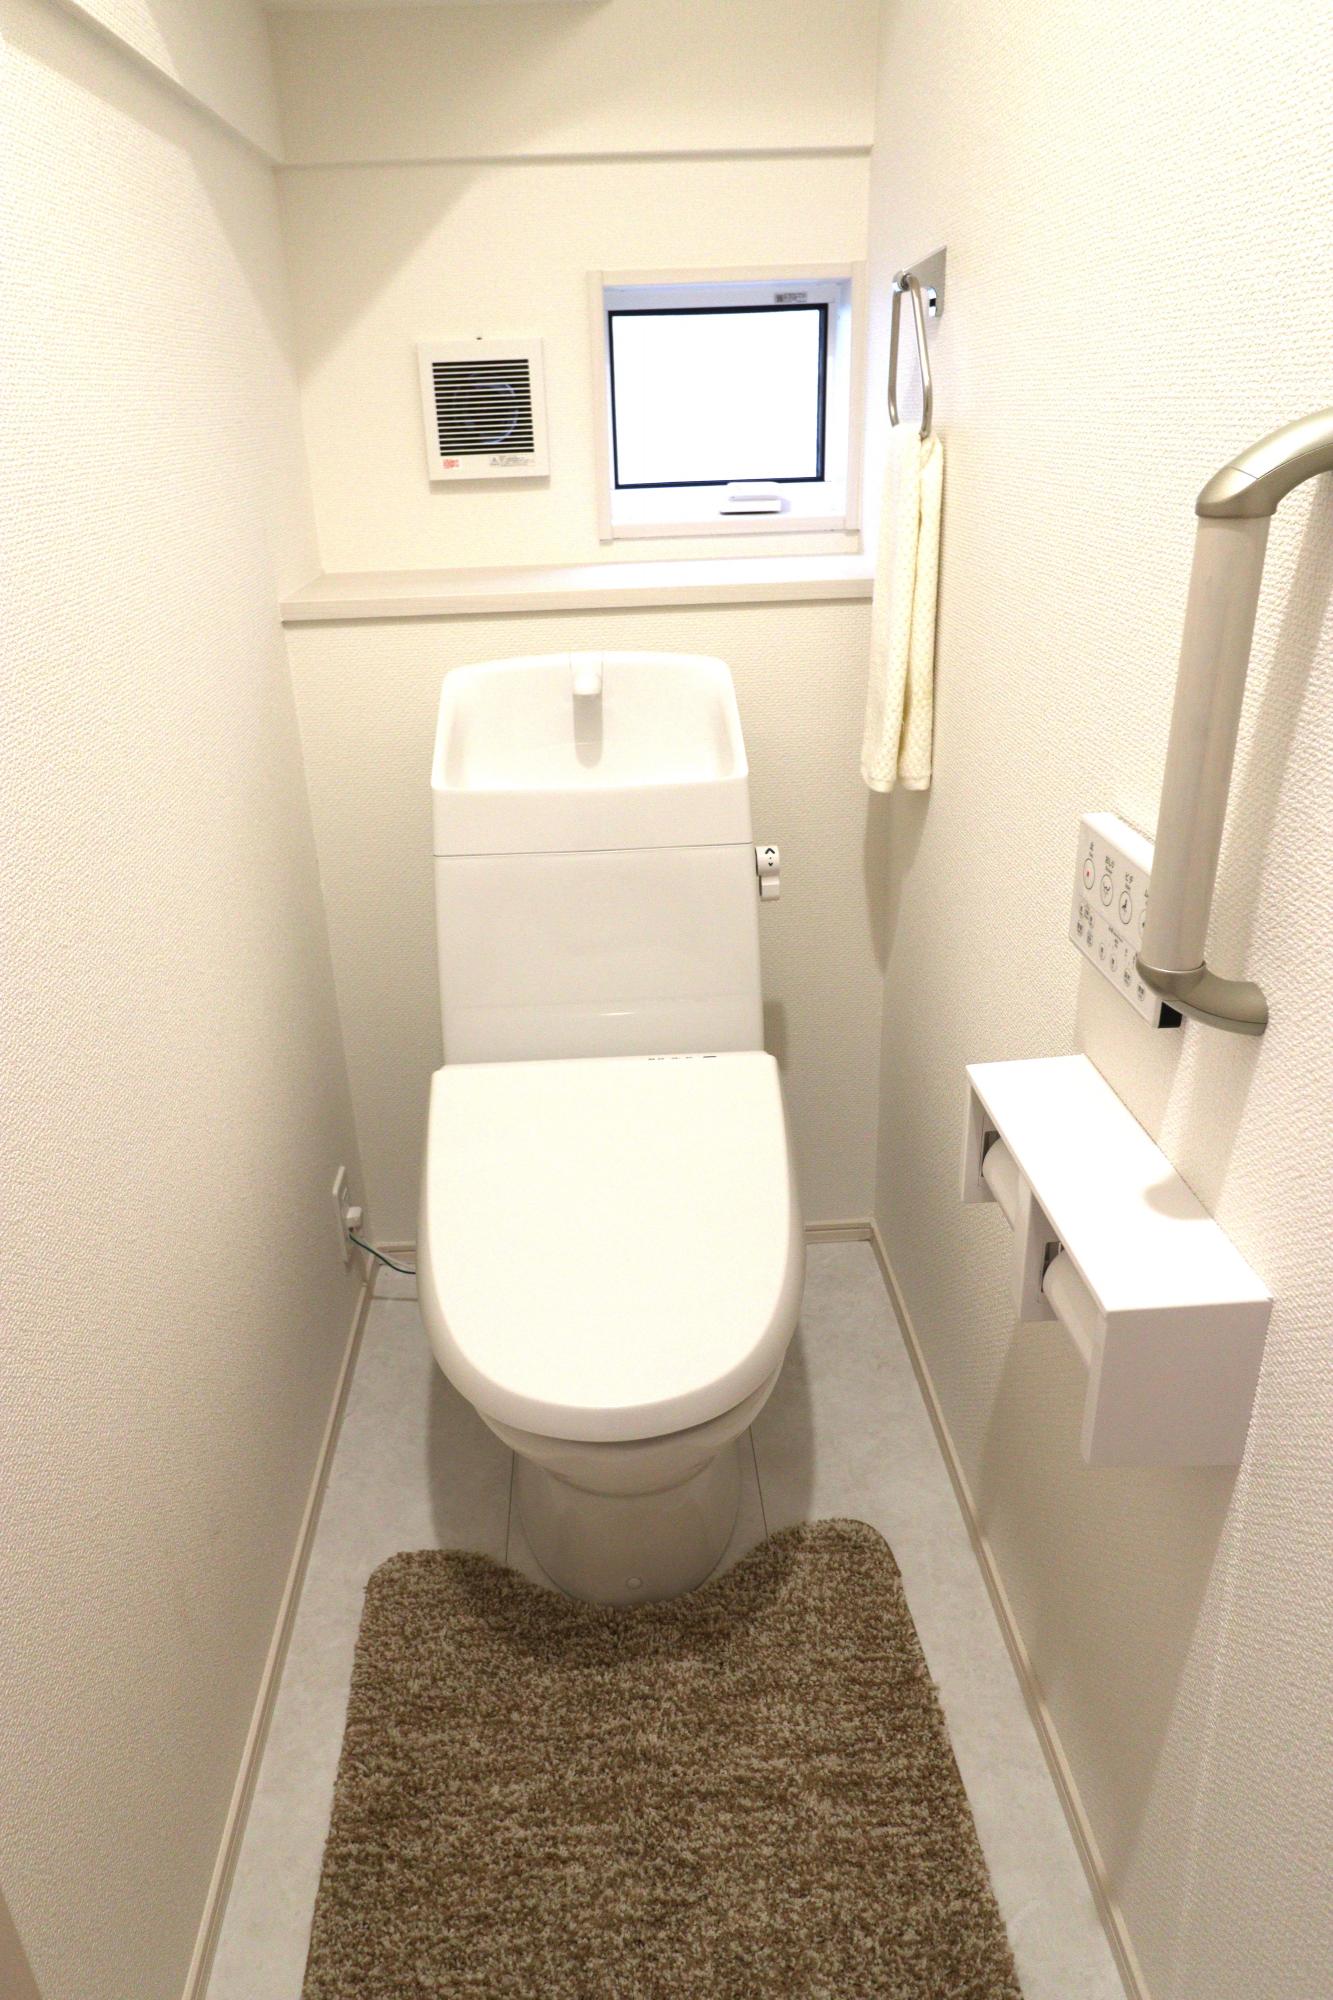 【トイレ】使い勝手に優れたワイヤレスリモコン式の温水洗浄便座!さらに収納棚も設置しているのでトイレ用品もスッキリと収納することができます♪ 